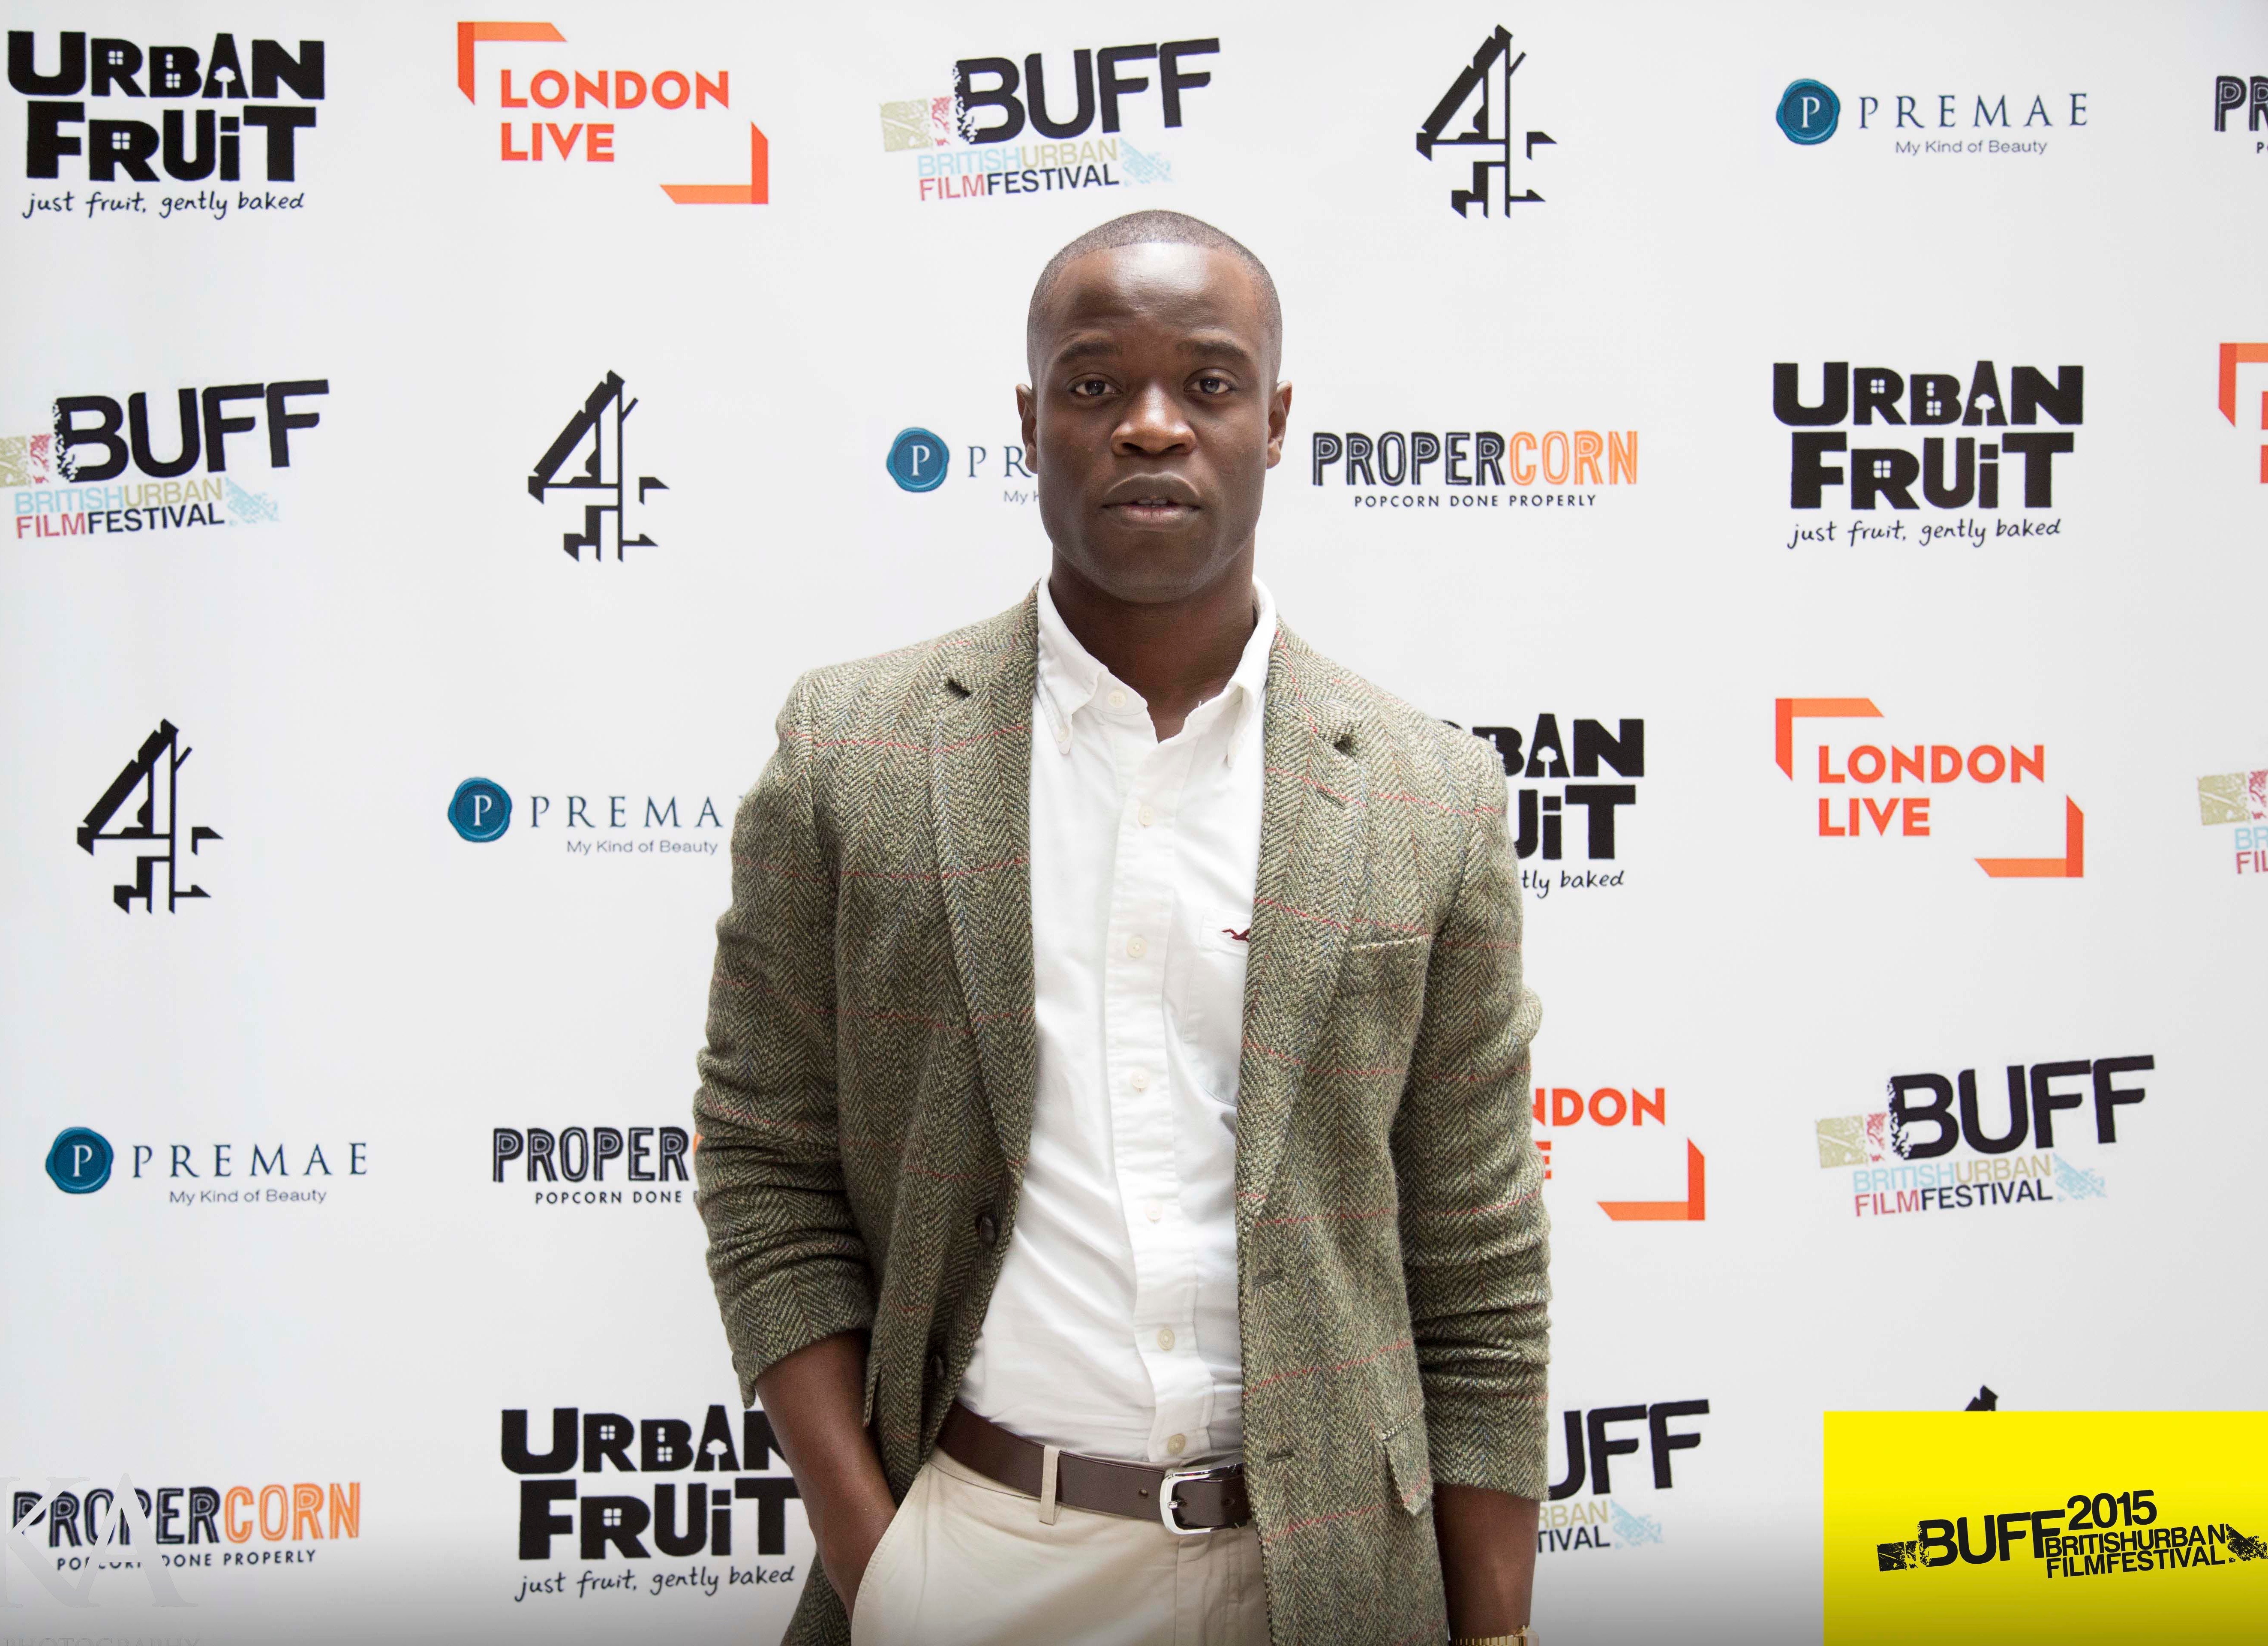 British Urban Film Festival